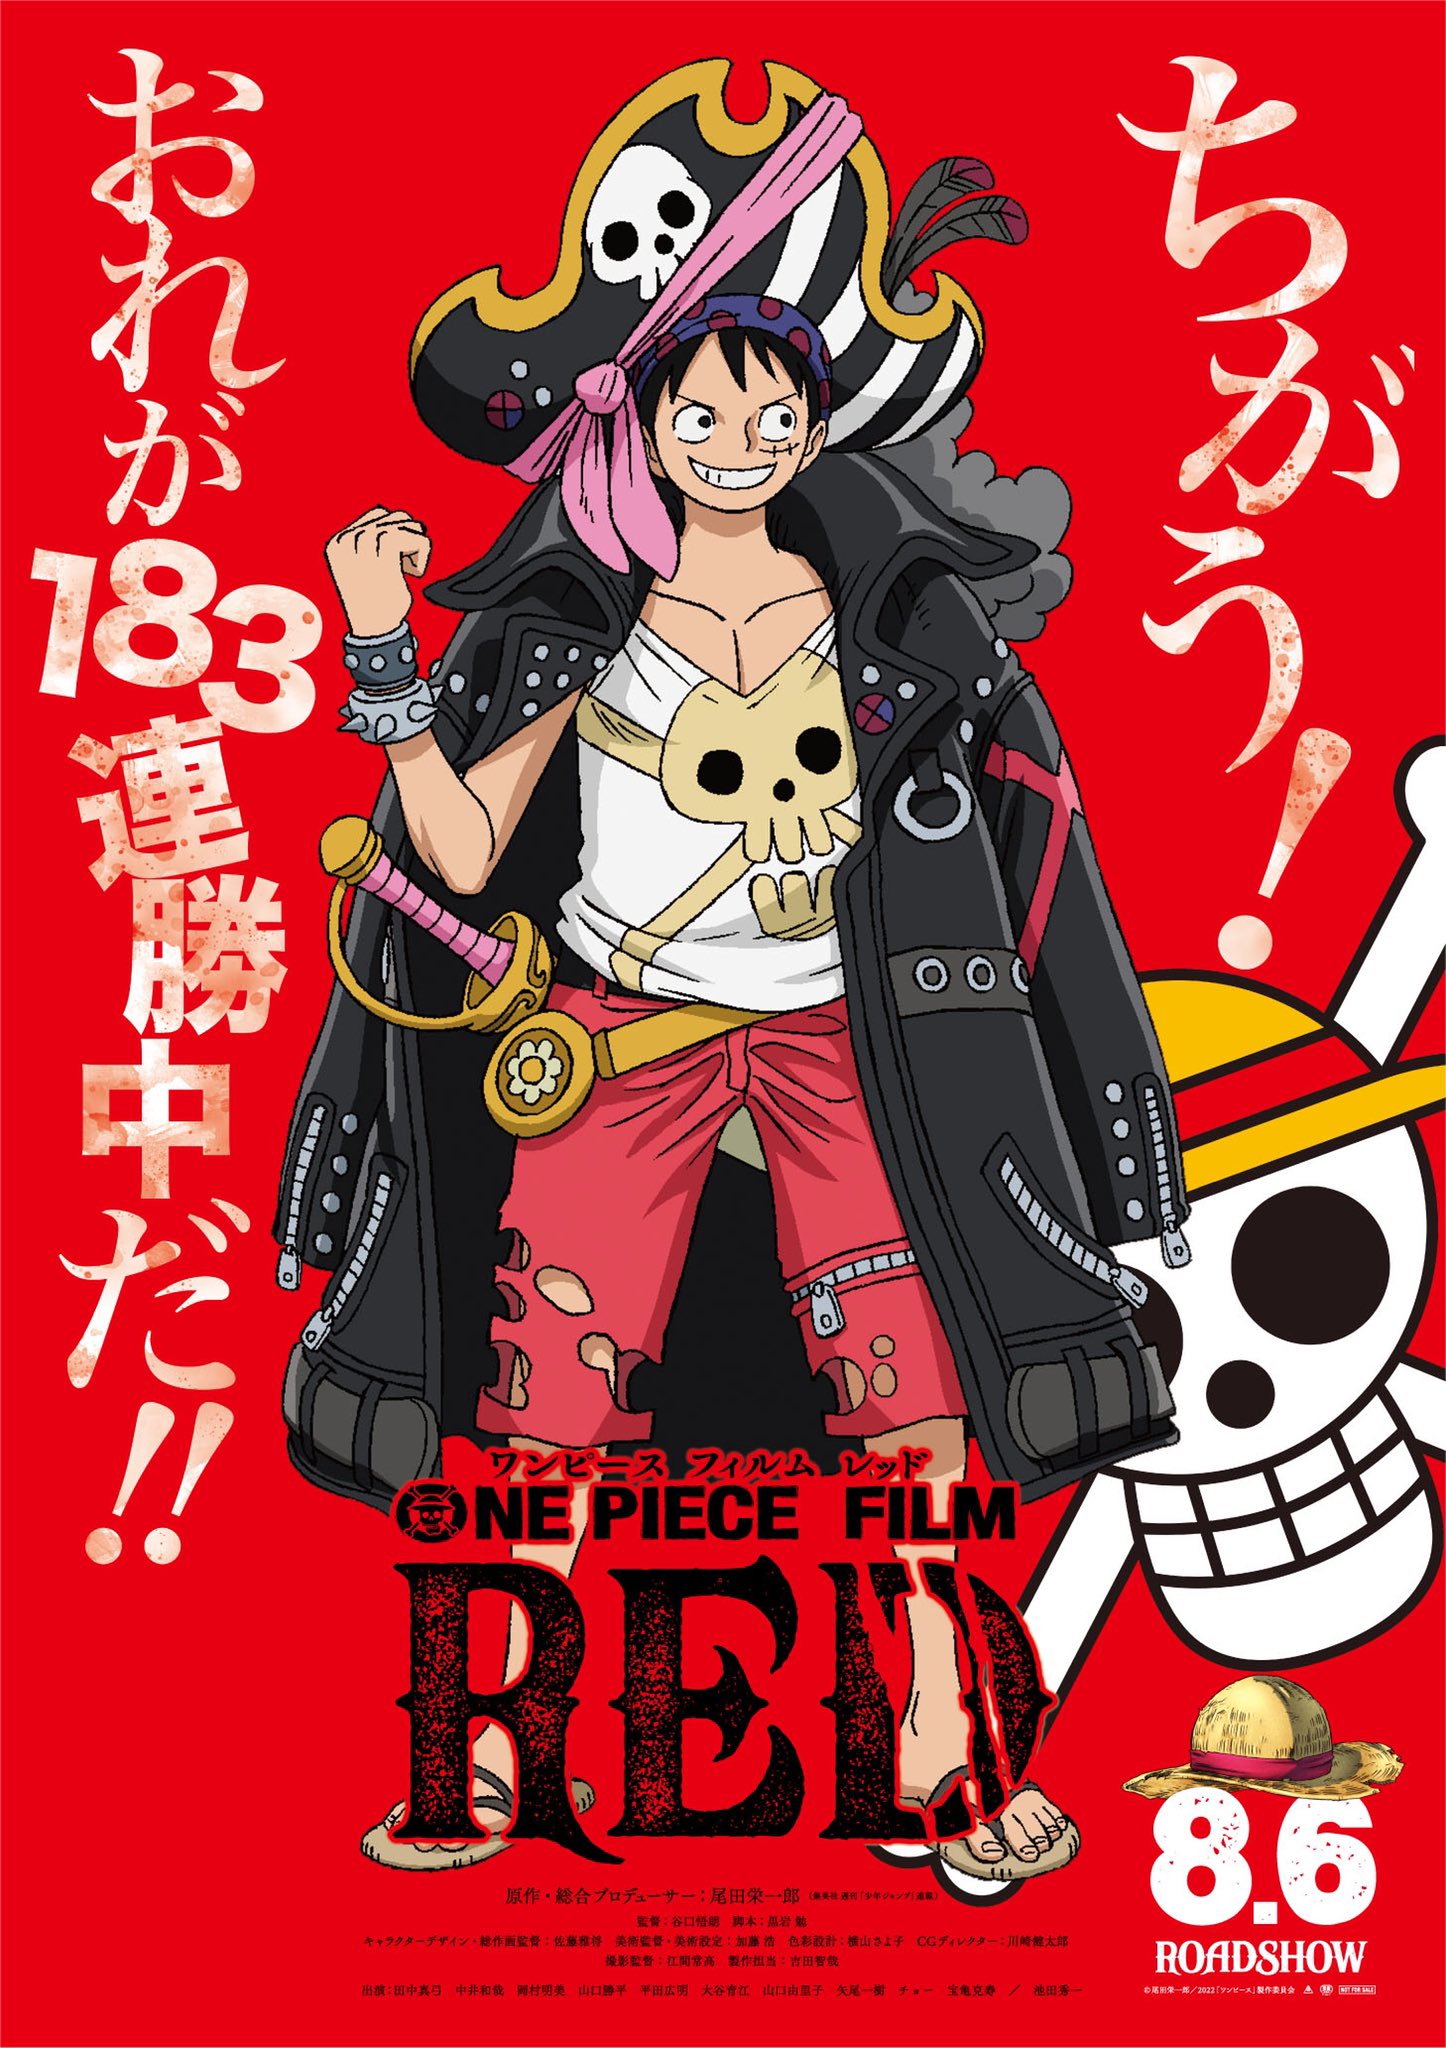 Bohemio de Hojalata on X: Póster promocionales de 'One Piece Film Red'  protagonizado por los Mugiwara y Shanks.  / X